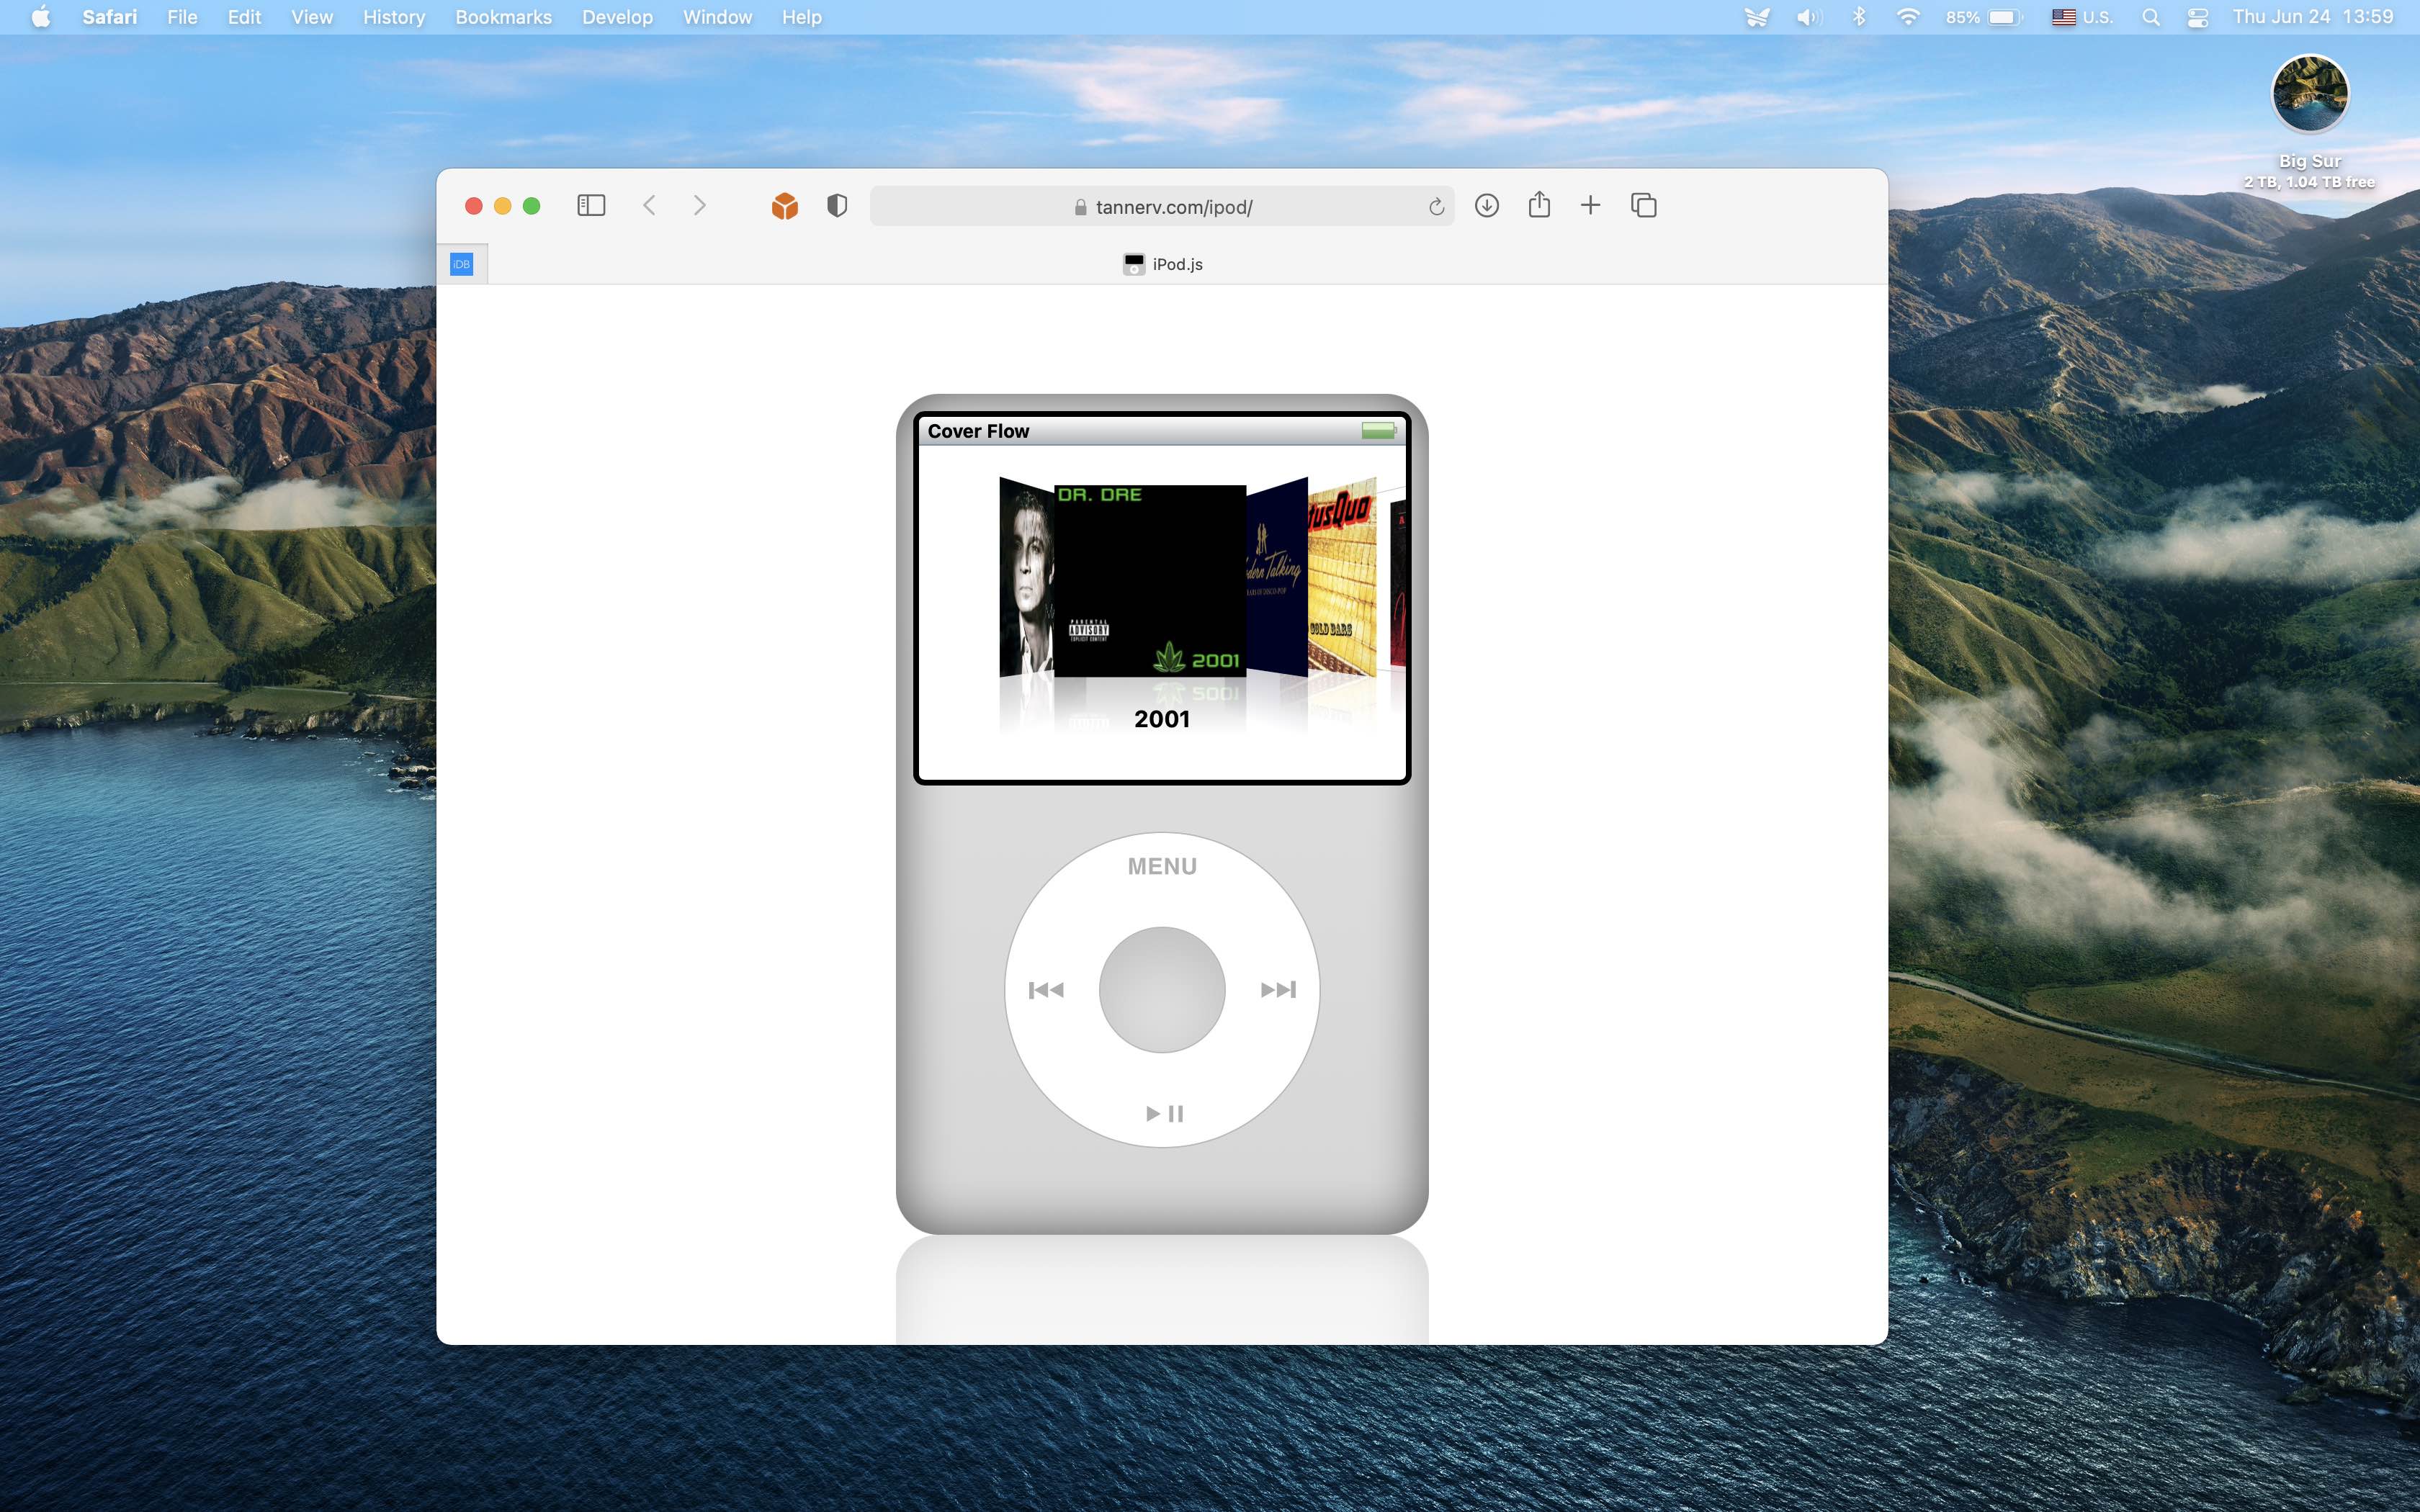 iPod Classic Web Player Hadir! Bisa Dengerin Musik Dari Spotify dan Apple Music